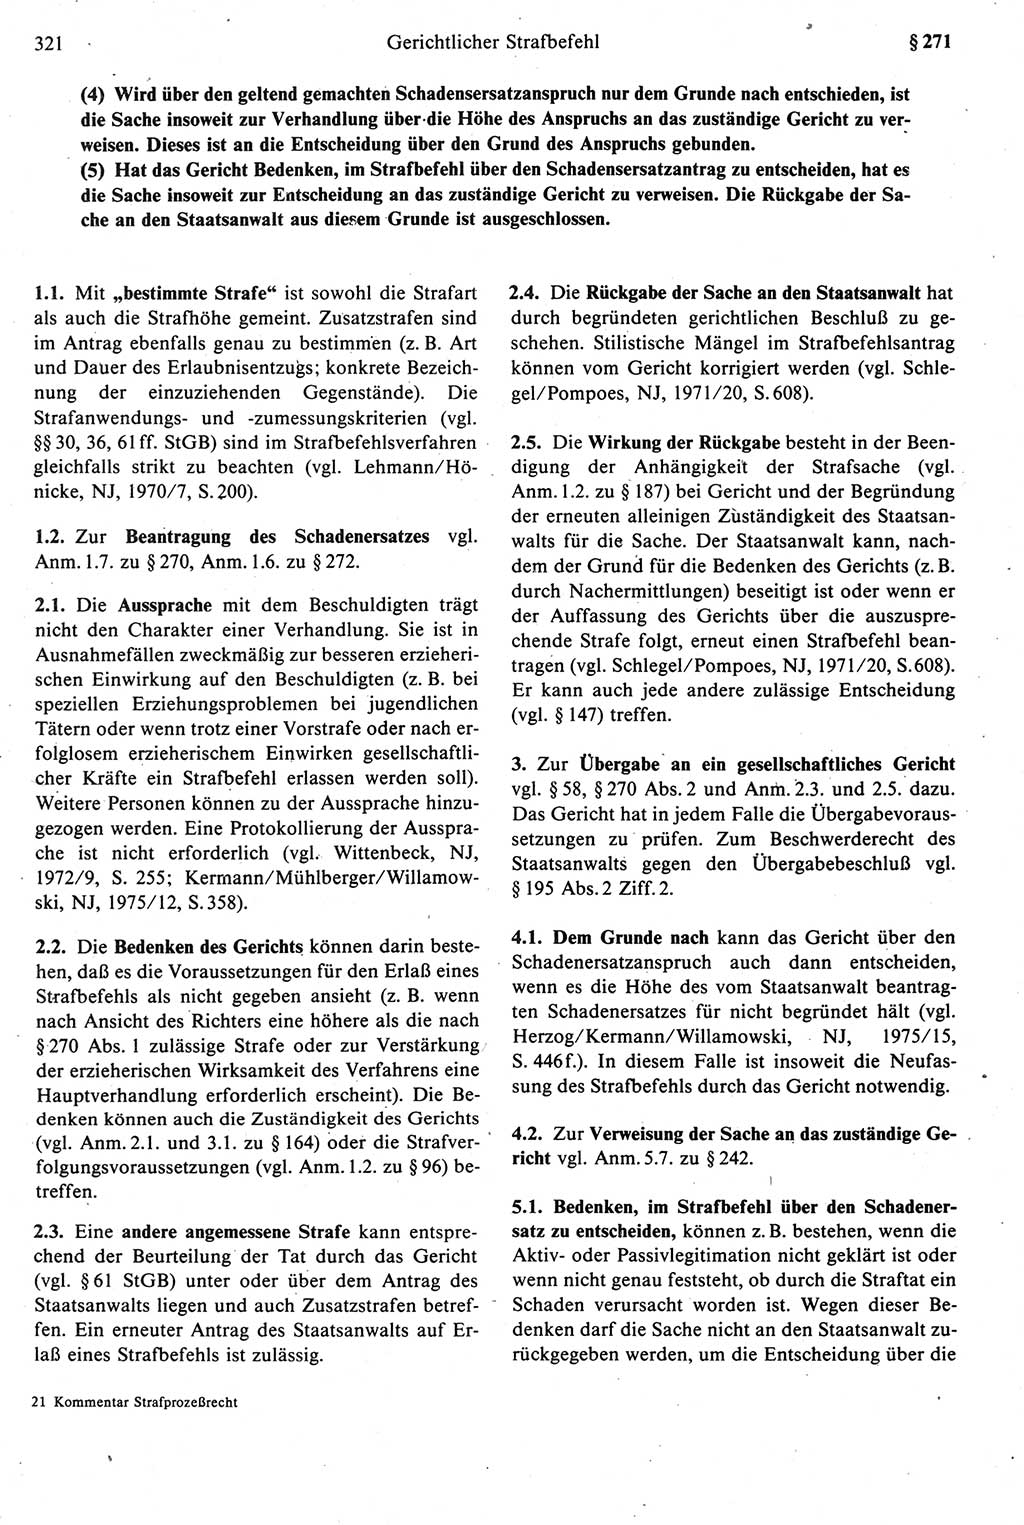 Strafprozeßrecht der DDR [Deutsche Demokratische Republik], Kommentar zur Strafprozeßordnung (StPO) 1987, Seite 321 (Strafprozeßr. DDR Komm. StPO 1987, S. 321)